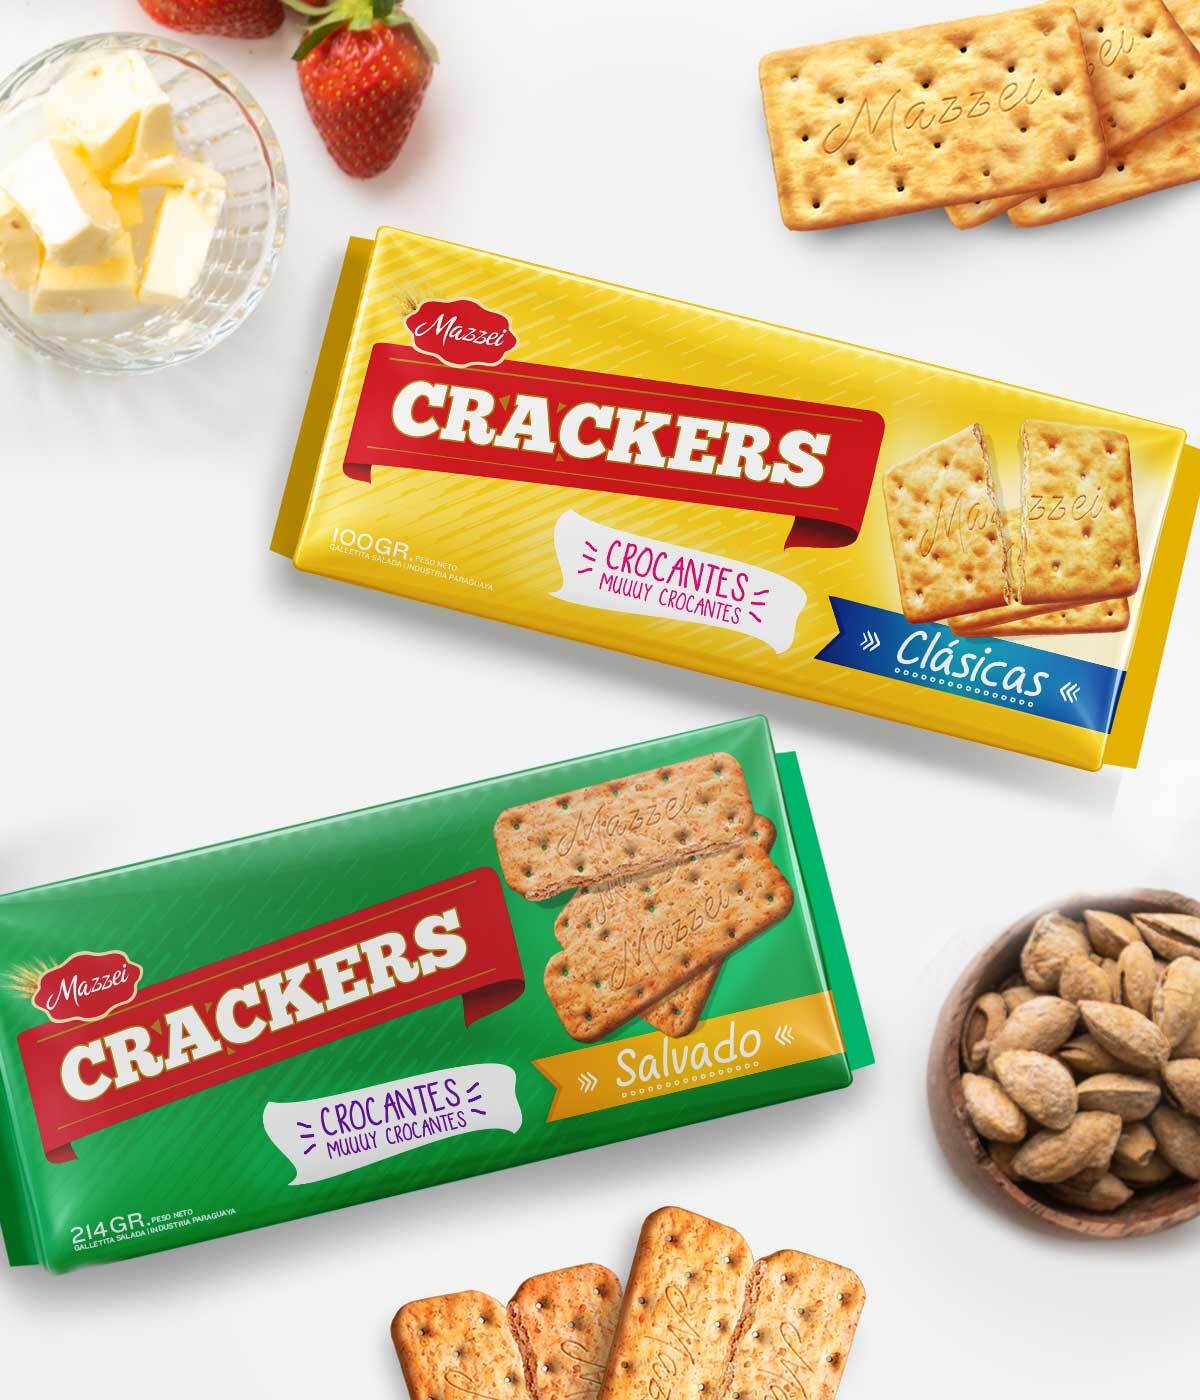 Imaginity, Mazzei, Crackers, Crackers, Packaging Design, Crunchy